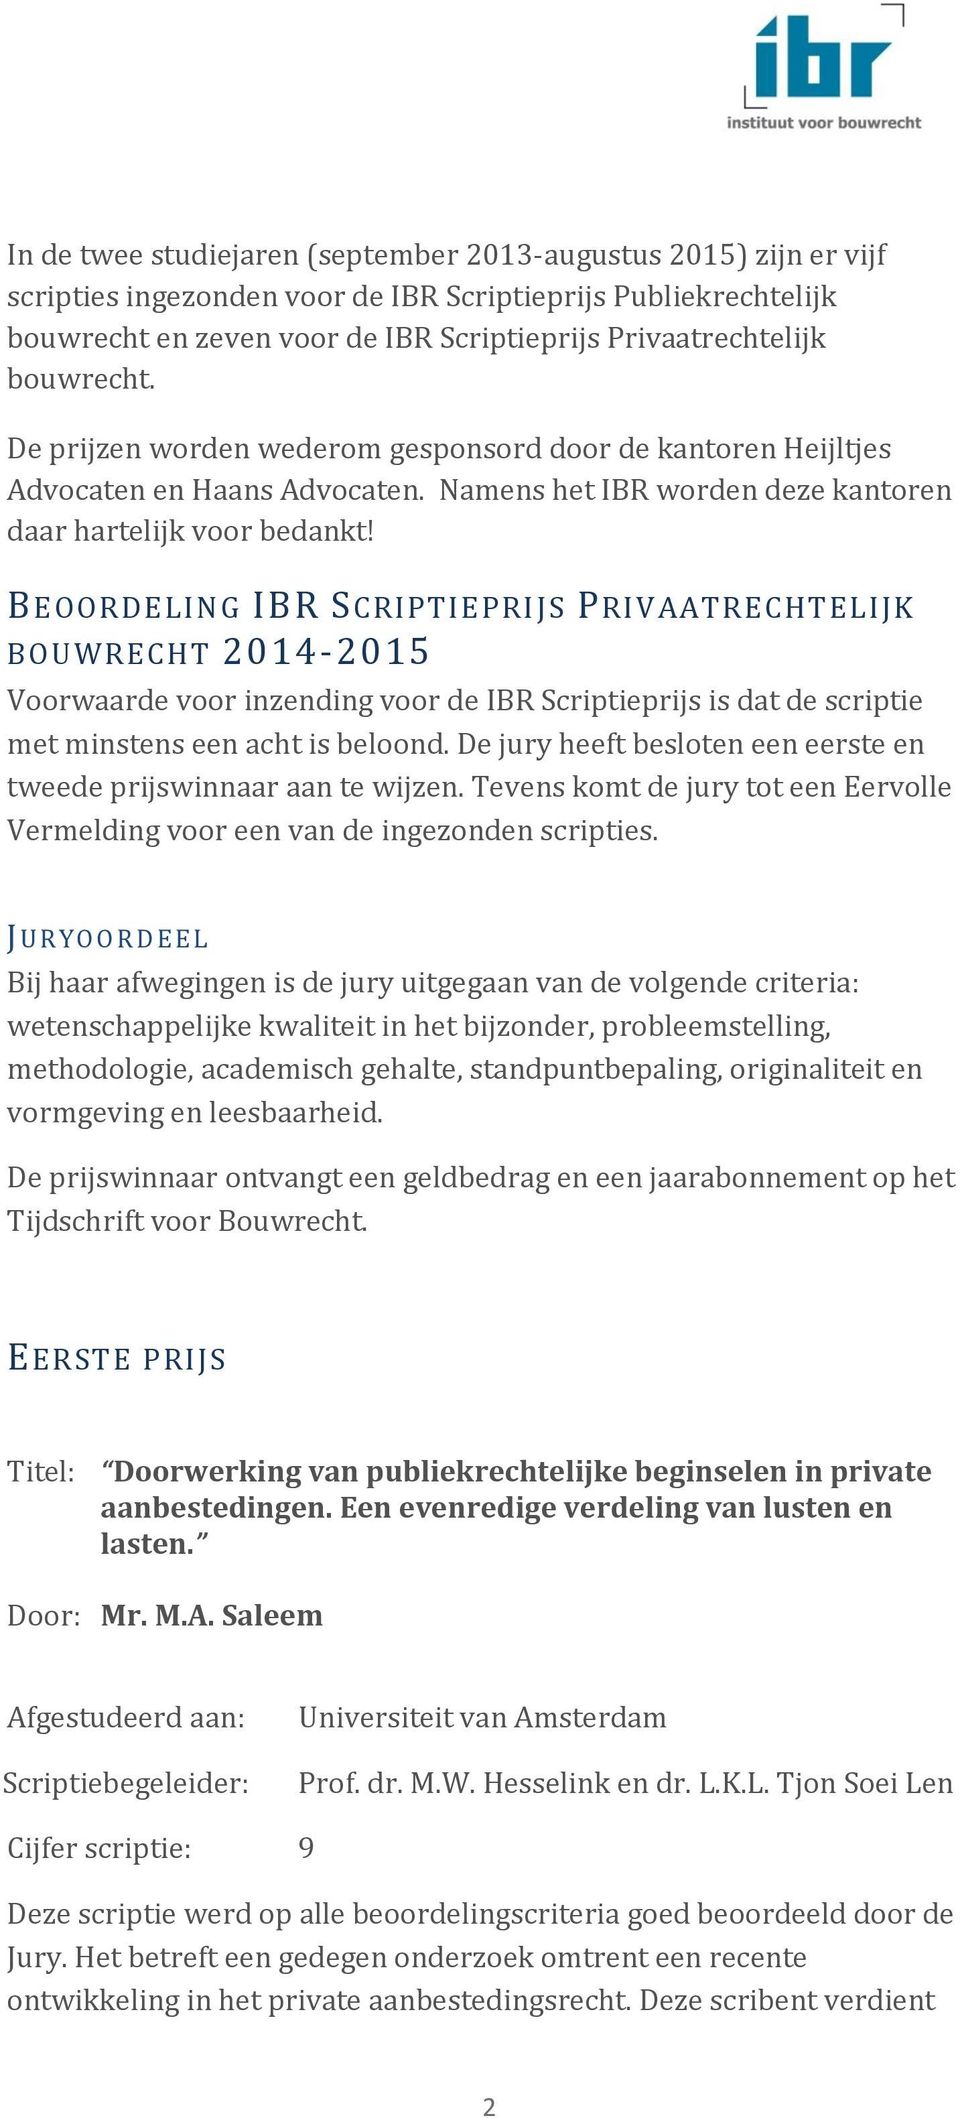 BEOORDELING IBR SCRIPTIEPRIJS PRIVAATRECHTELIJK BOUWRECHT 2014-2015 Voorwaarde voor inzending voor de IBR Scriptieprijs is dat de scriptie met minstens een acht is beloond.